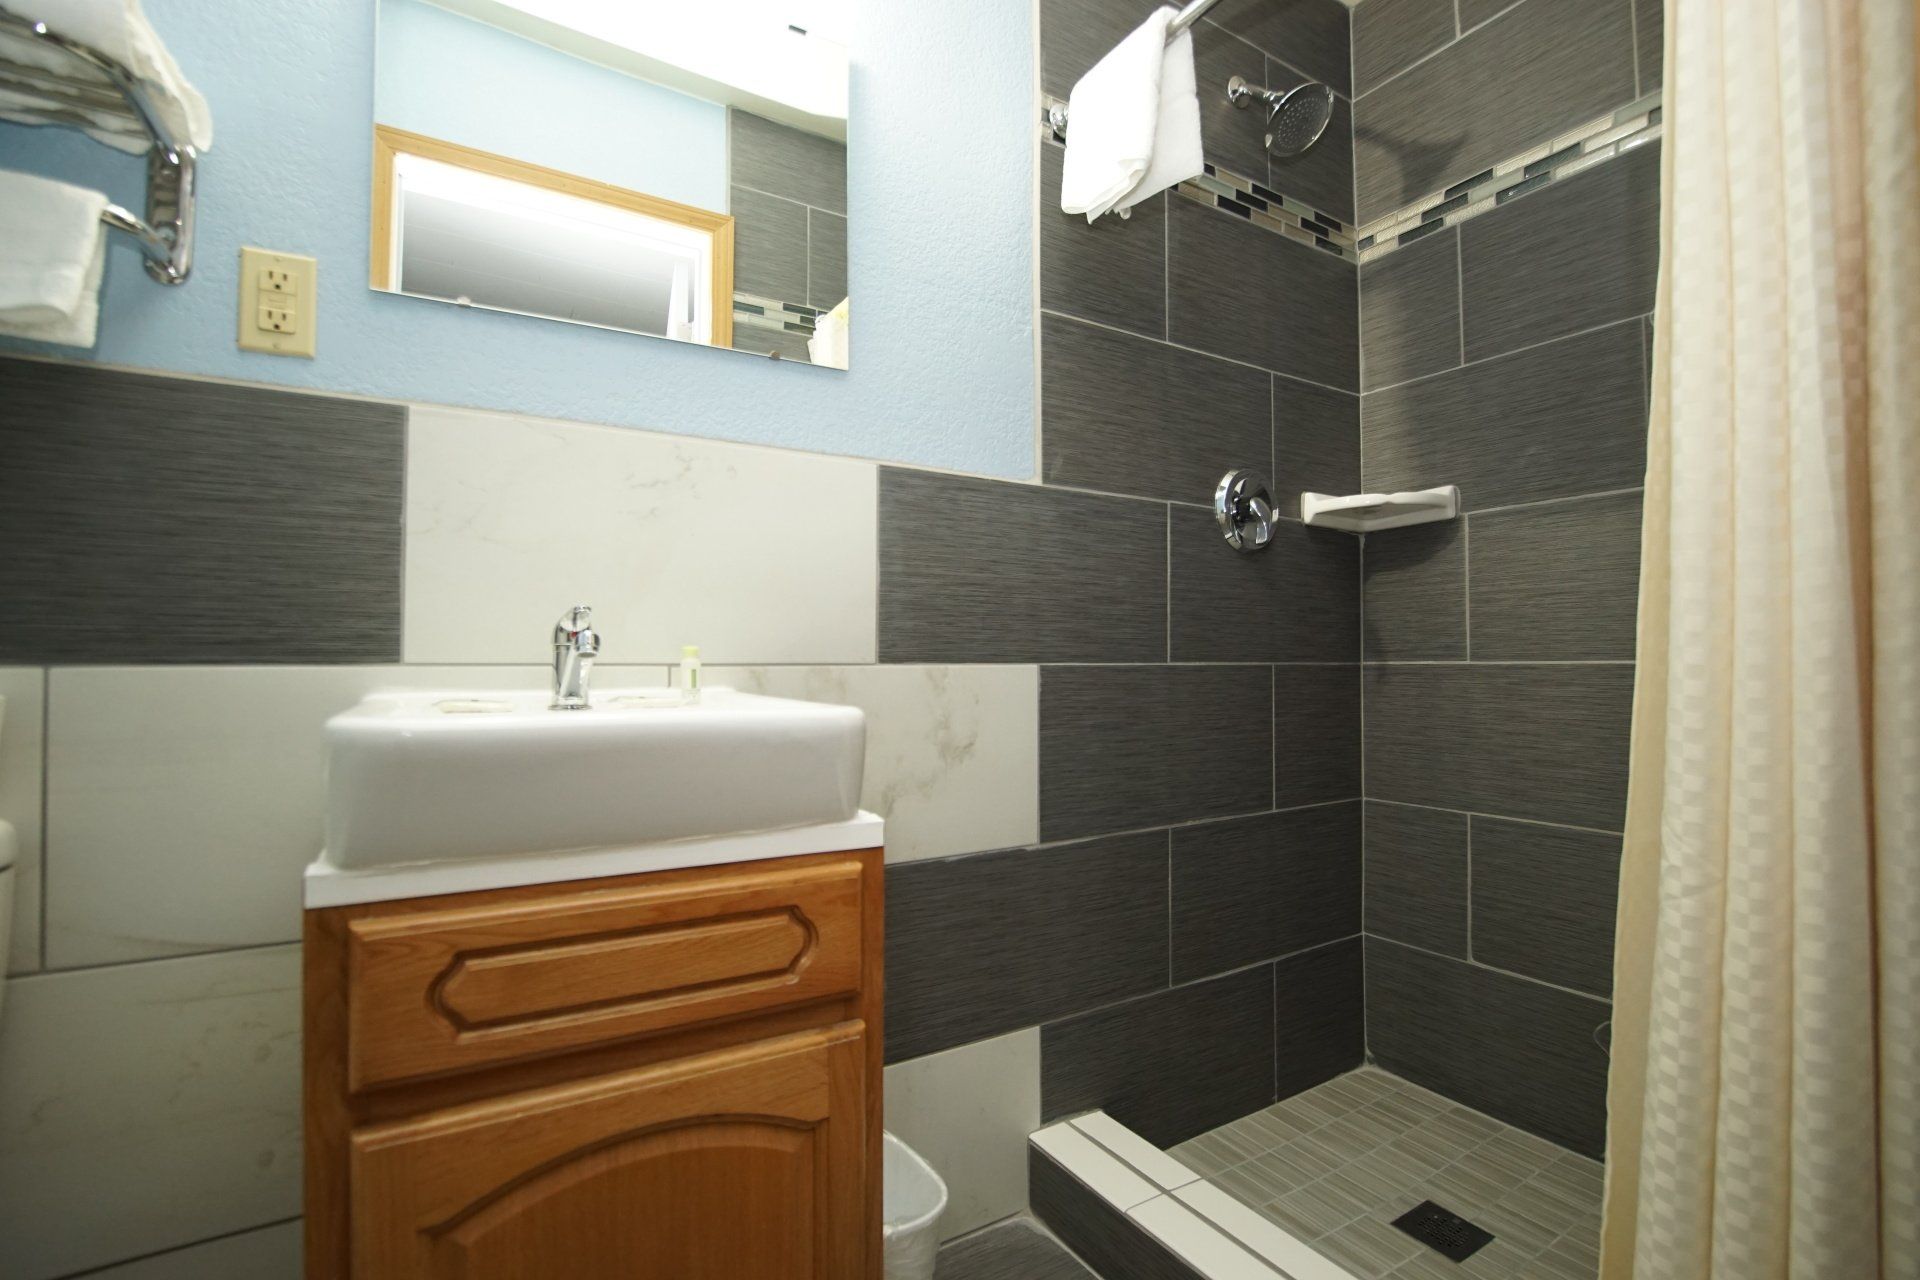 Standard 1 Queen Bathroom Shower